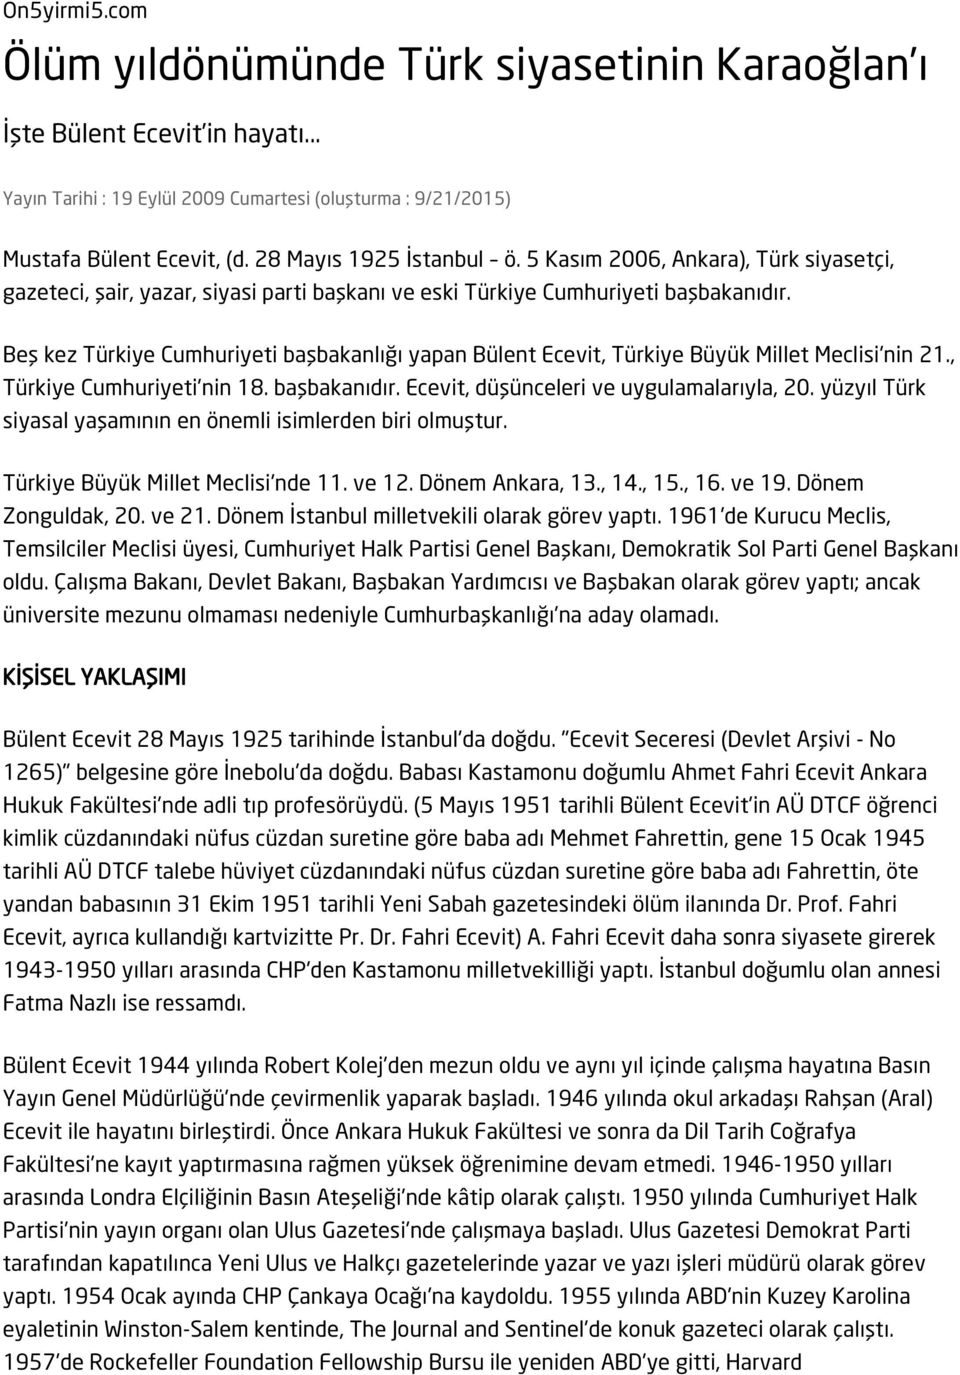 Beş kez Türkiye Cumhuriyeti başbakanlığı yapan Bülent Ecevit, Türkiye Büyük Millet Meclisi'nin 21., Türkiye Cumhuriyeti'nin 18. başbakanıdır. Ecevit, düşünceleri ve uygulamalarıyla, 20.